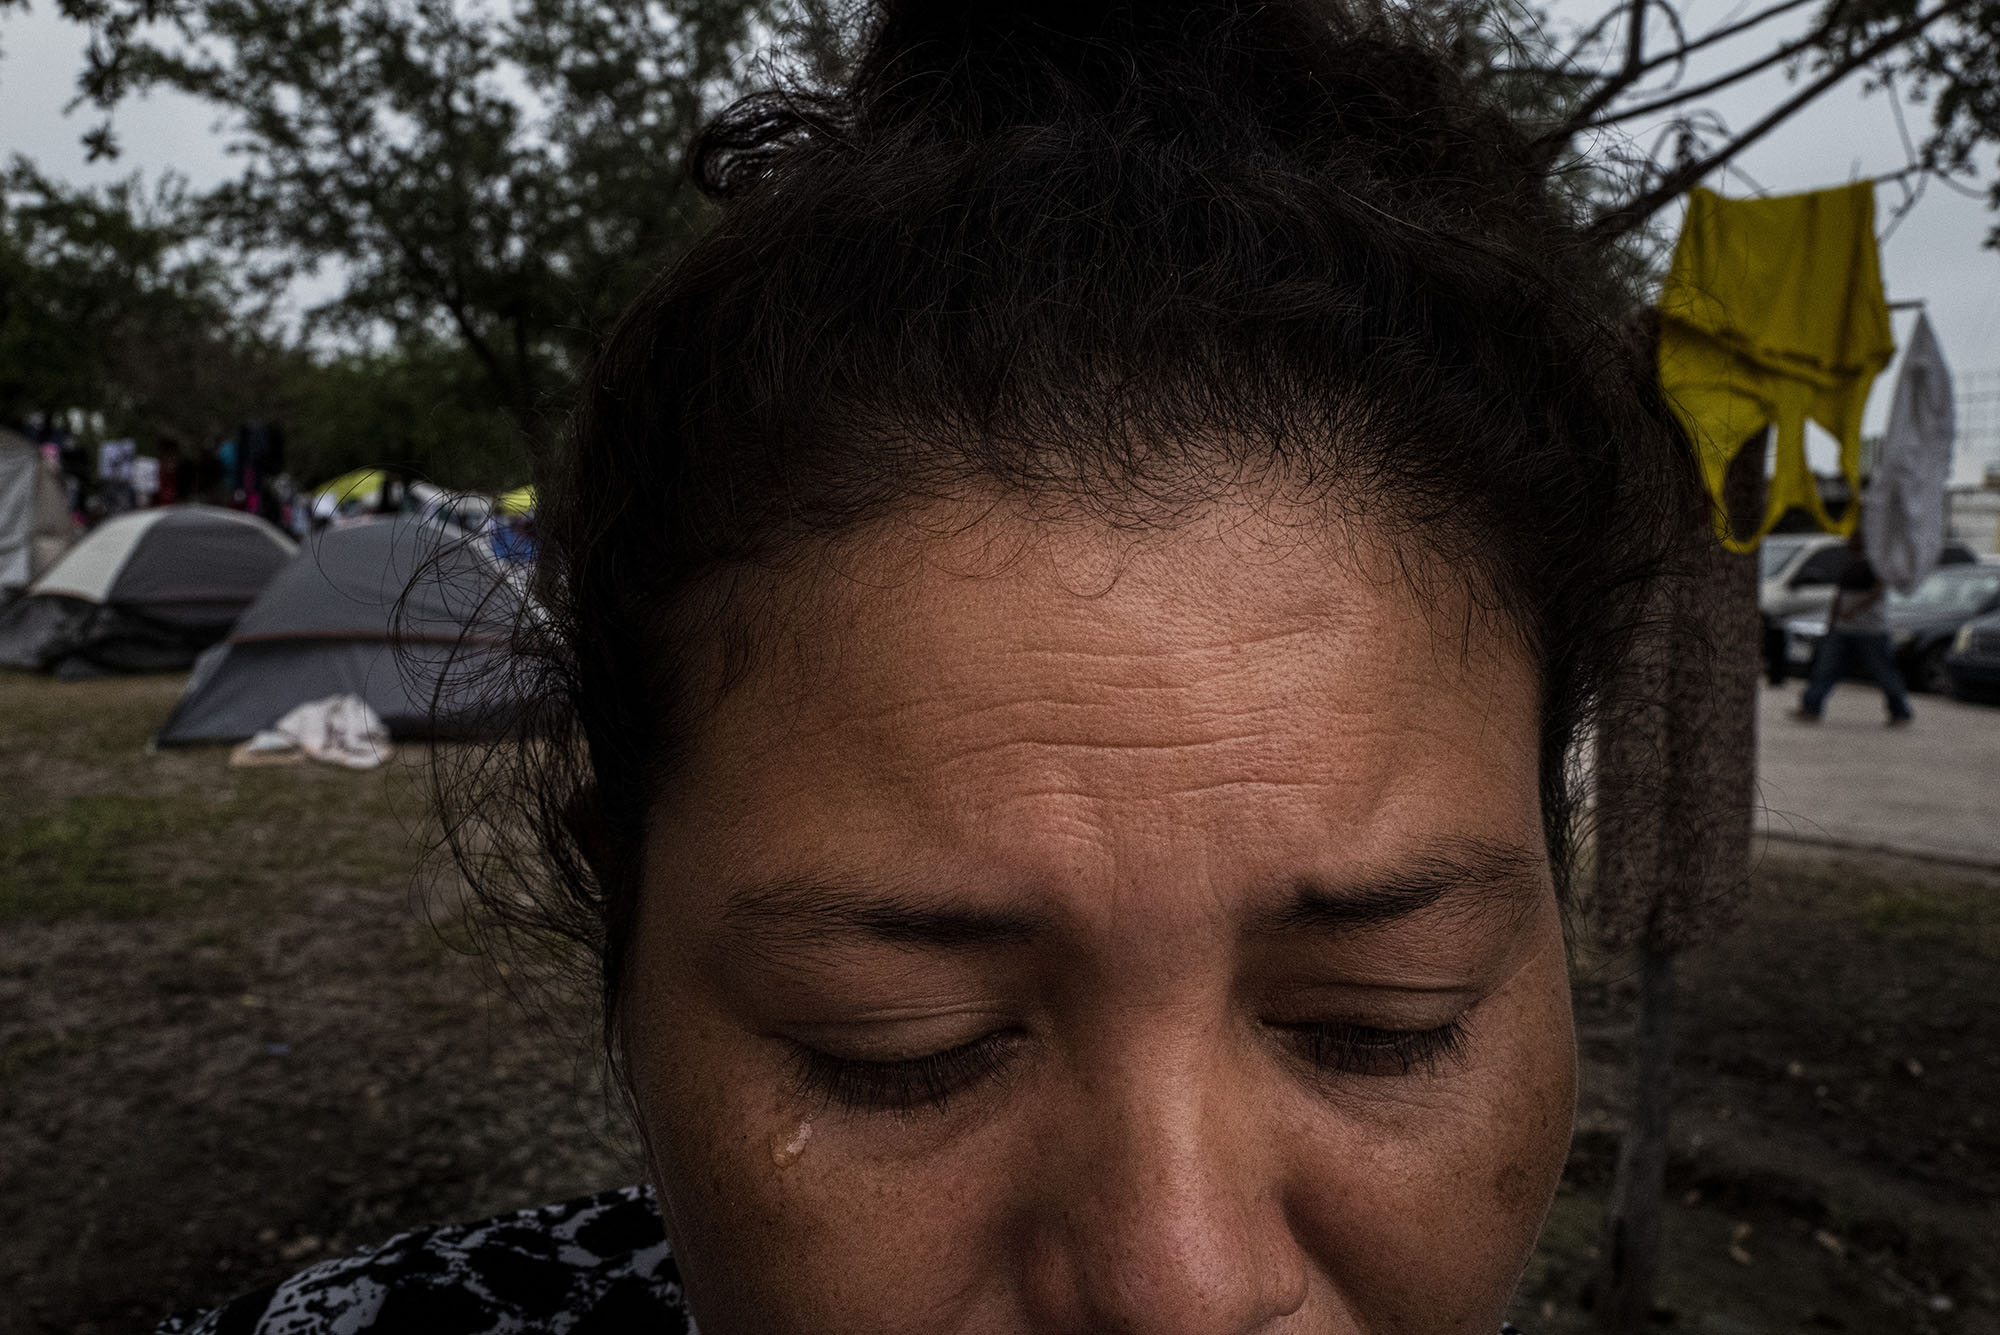 路易莎‧科圖，33歲，在收到死亡威脅並失去兩位家人後離開了她的國家。她現在住在雷諾薩的一個營地。